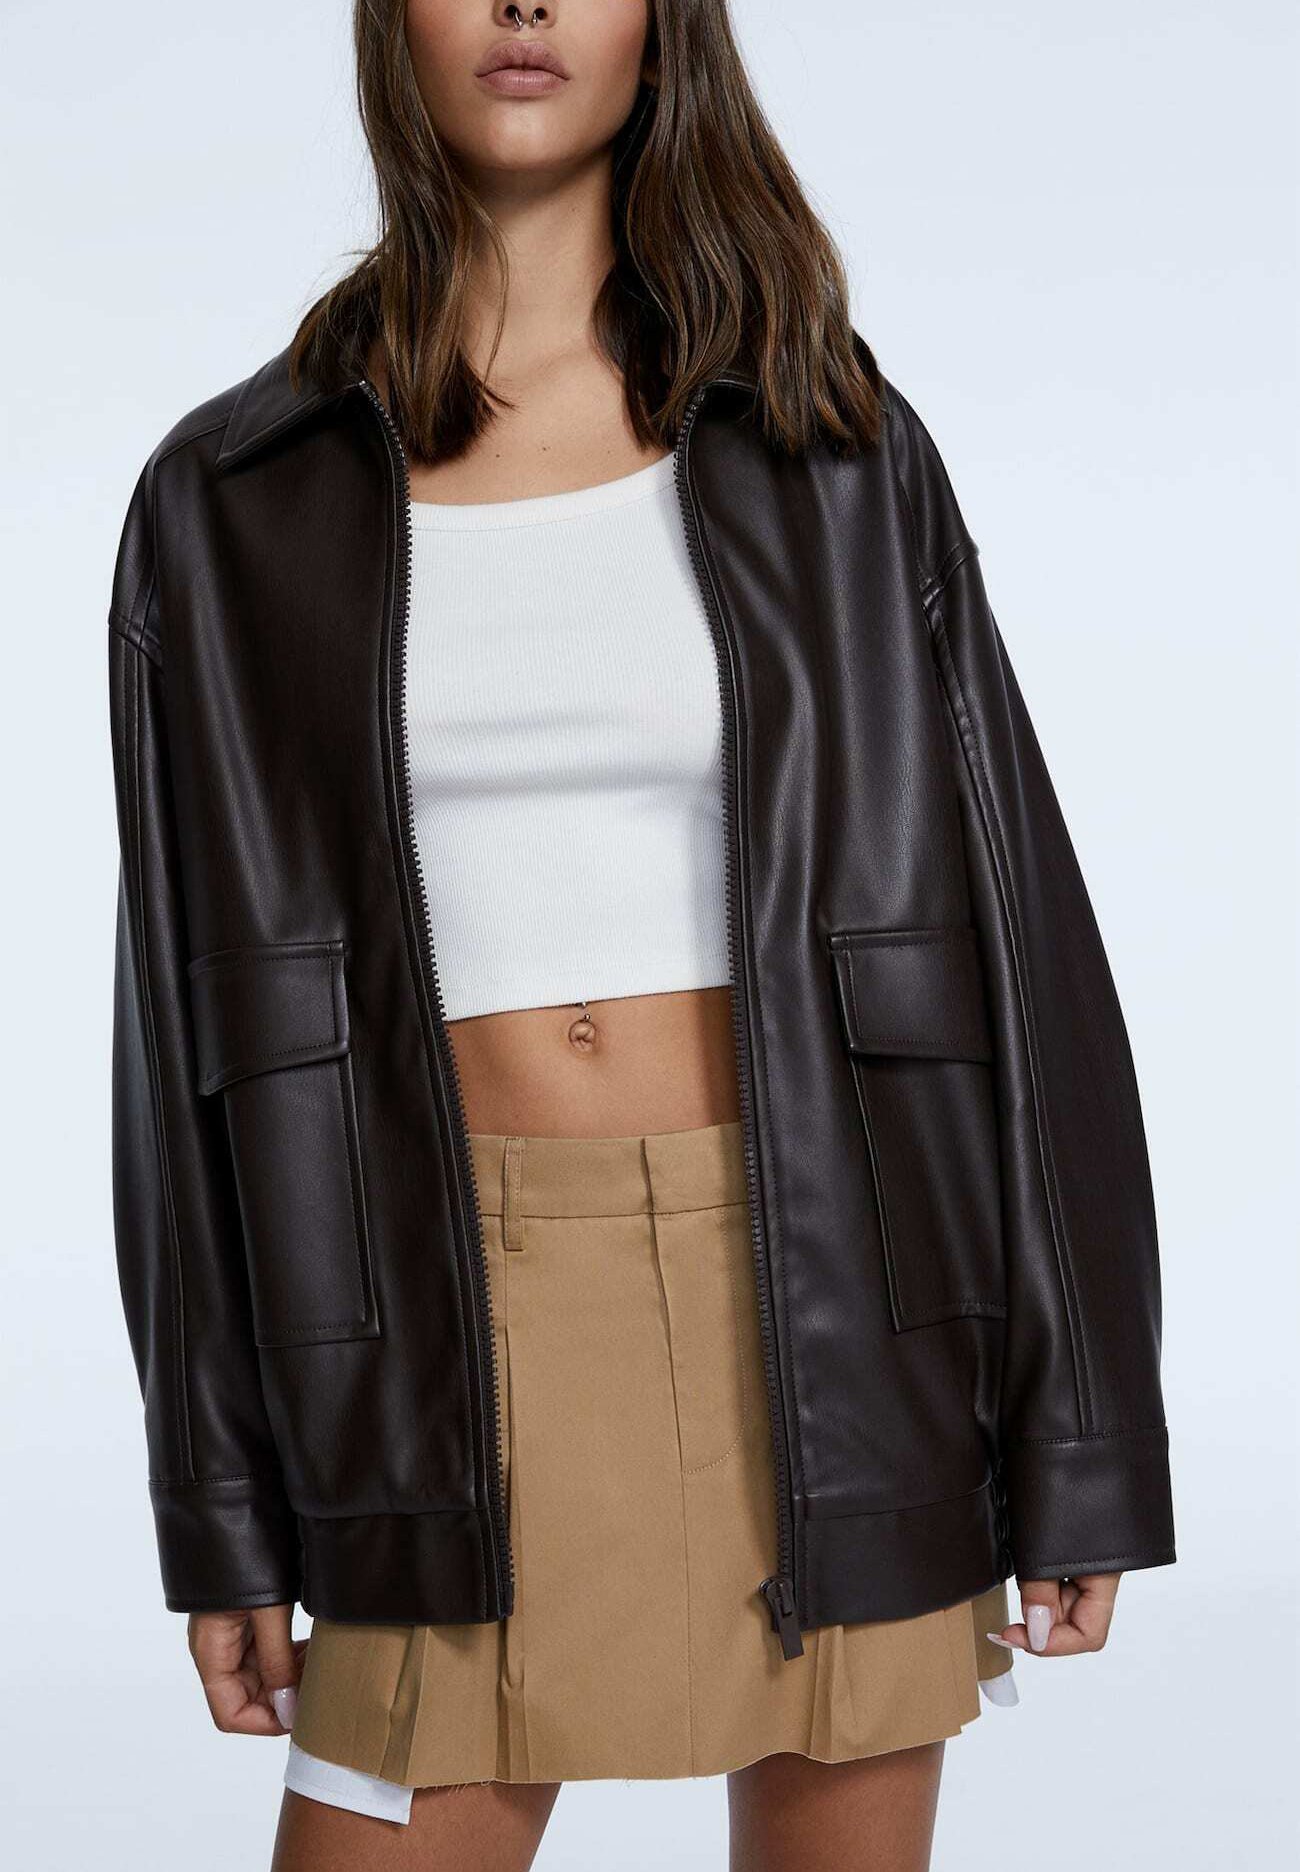 stradivarius brown leather jacket